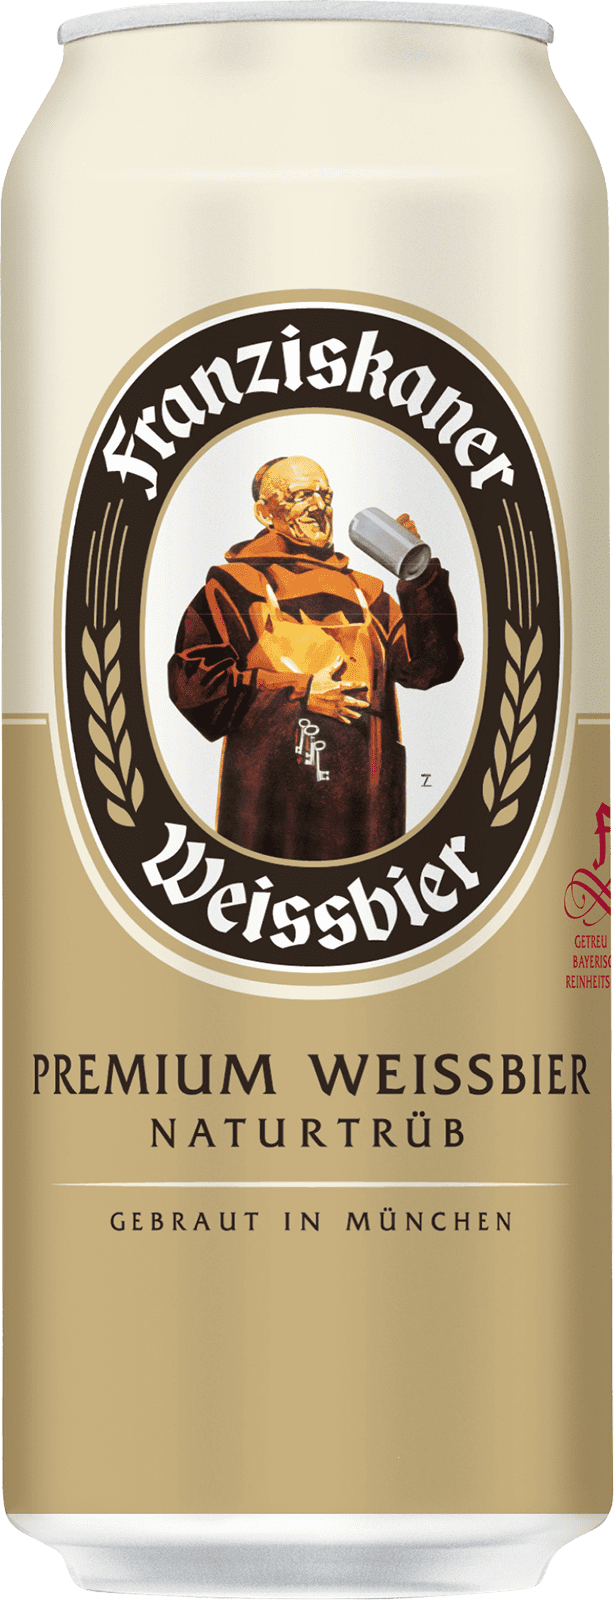 Franziskaner Weissbierglas 0,5L - Authentisches Biererlebnis aus Münc, 3,33  EUR